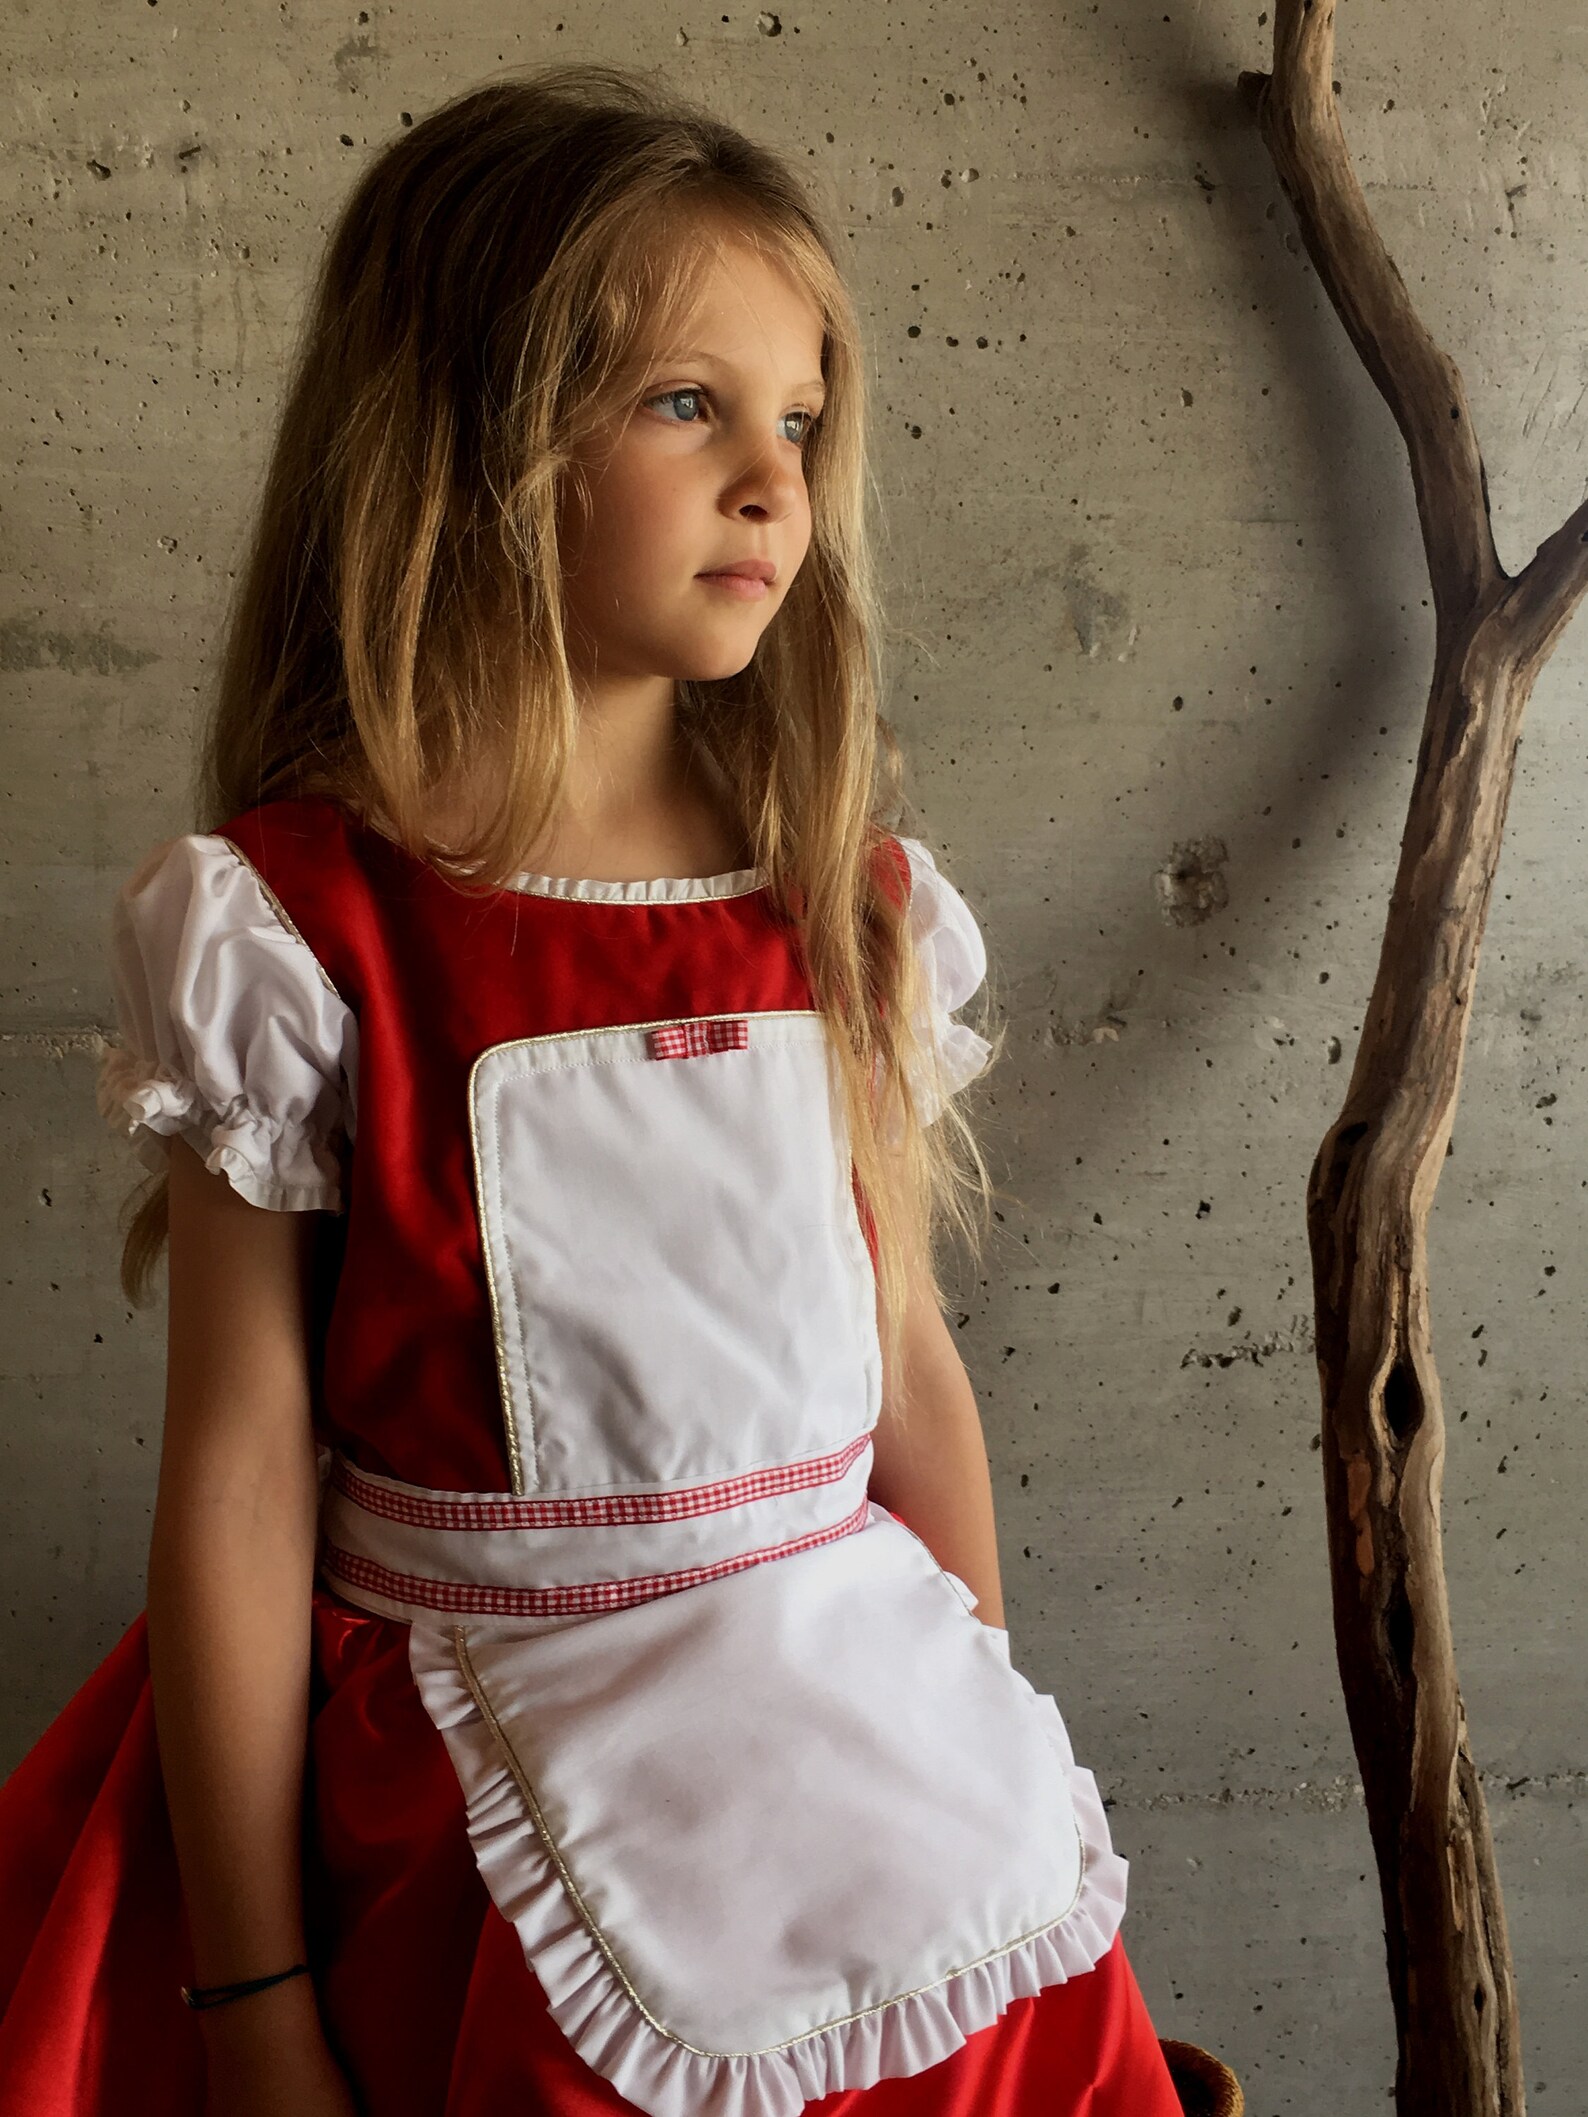 Little Red Riding Hood Dress in Red Velvet and Satin for Girls - Etsy